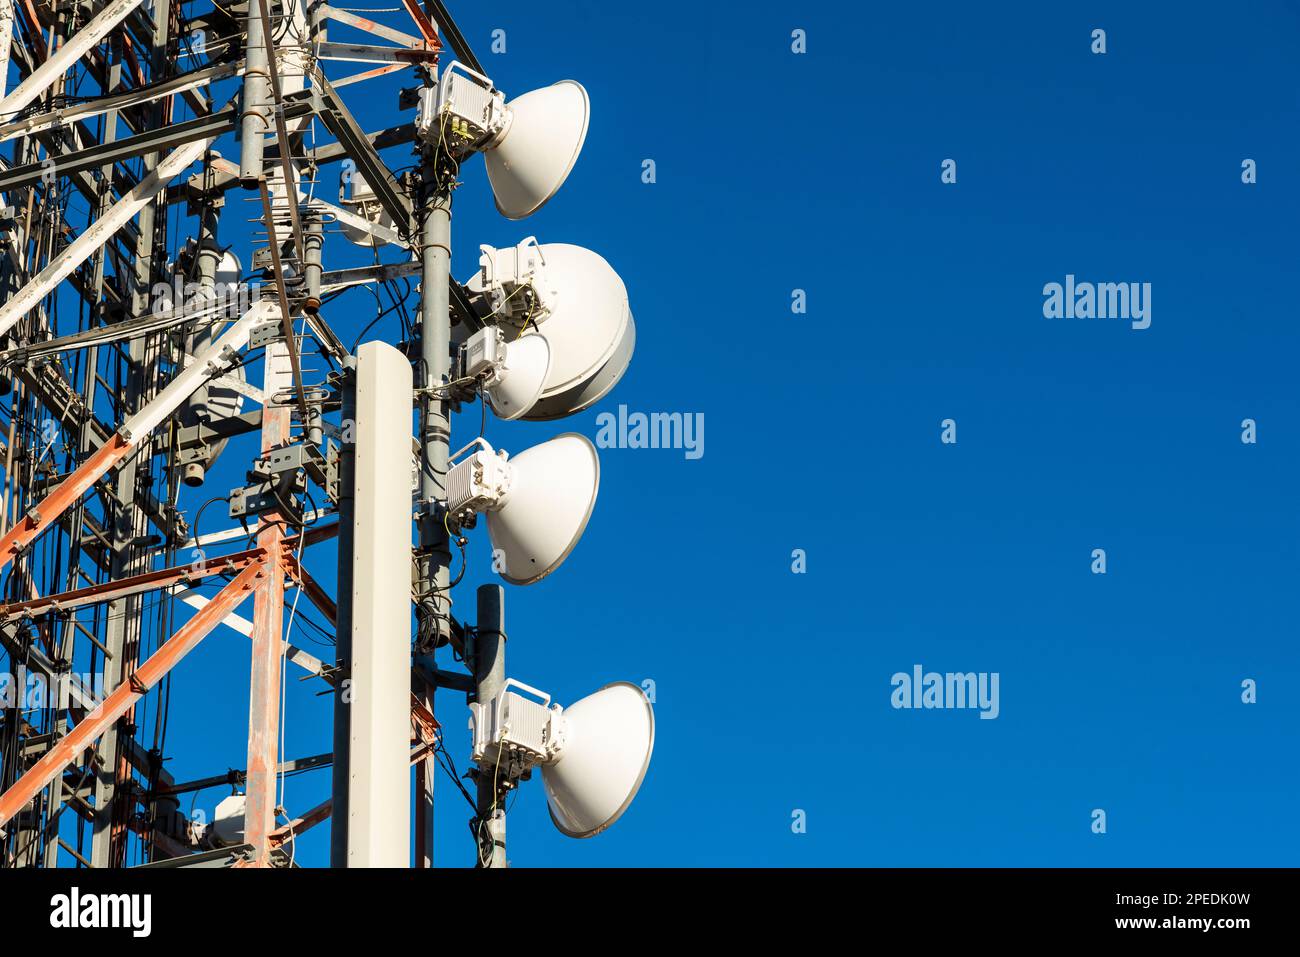 Torres de telecomunicaciones con el azul del cielo de fondo Stock Photo